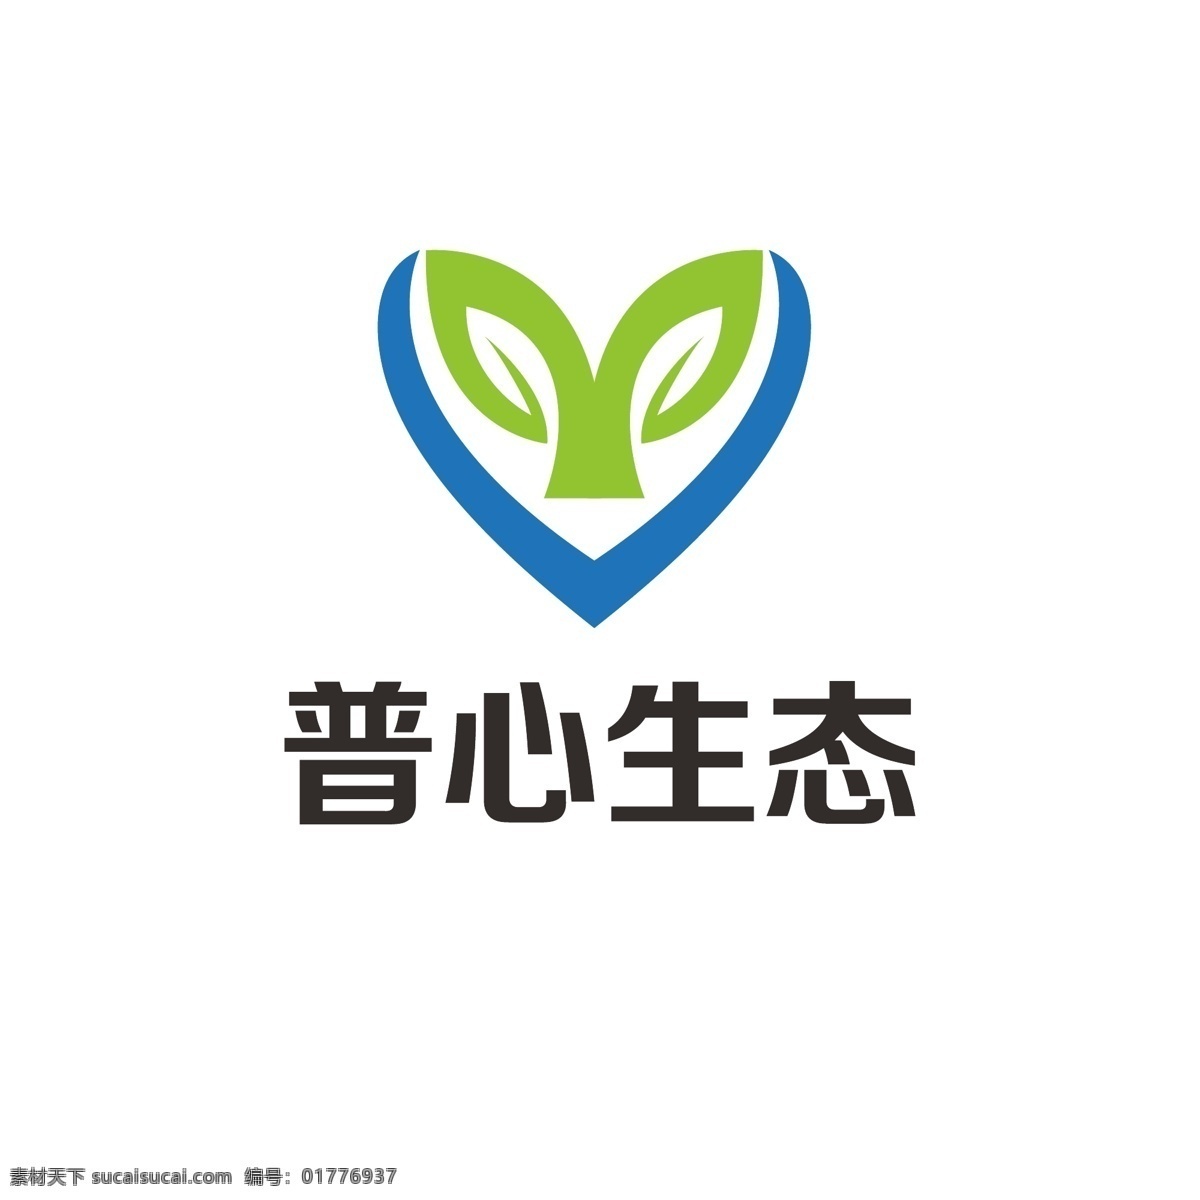 心理健康 logo 心理 绿色 健康 发展 爱心 心态 幼苗 呵护